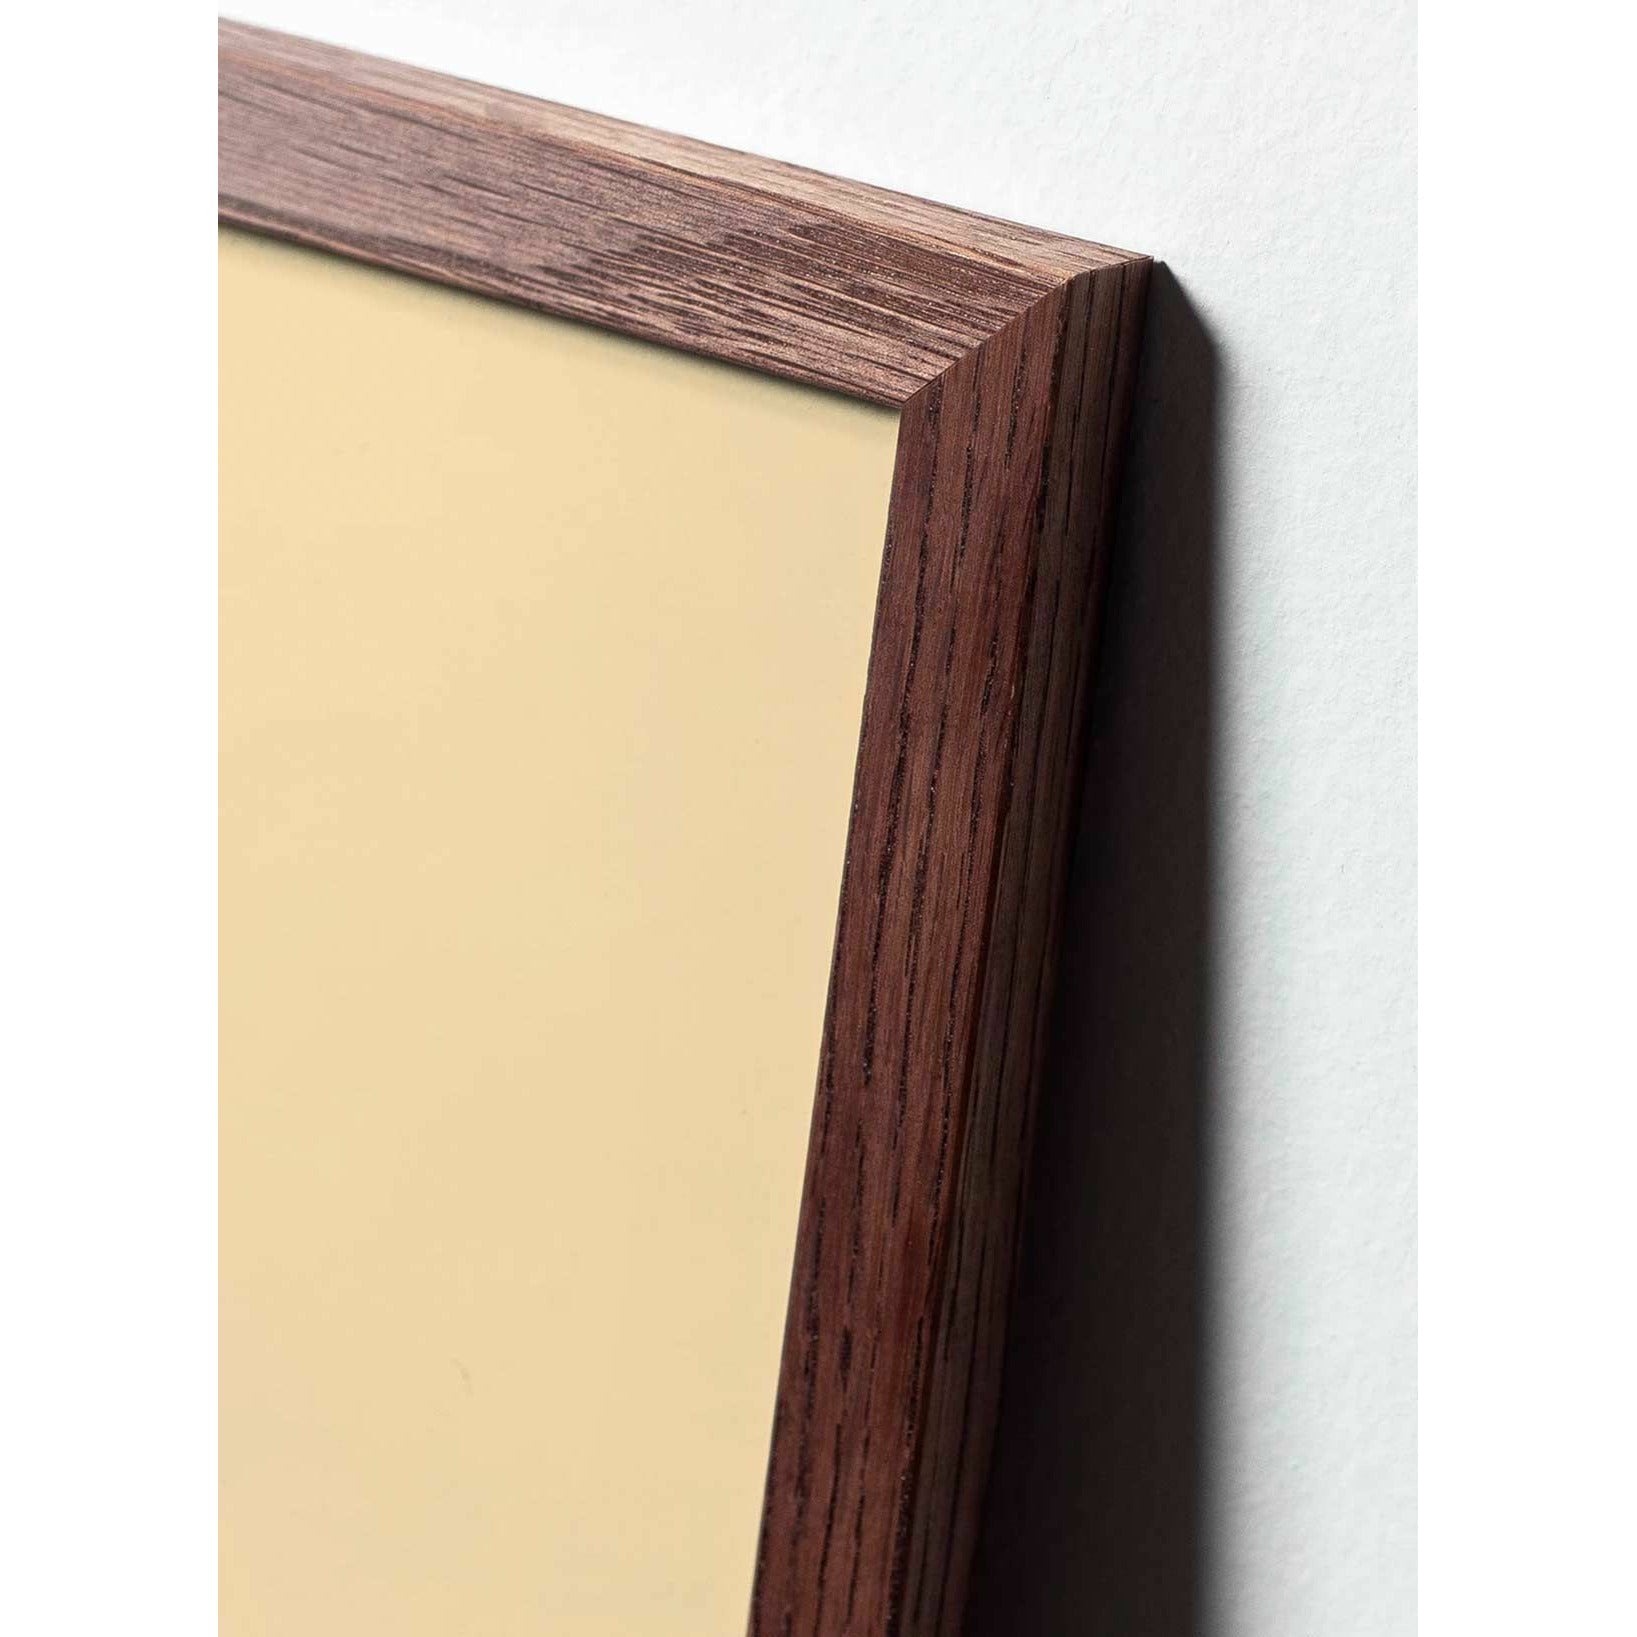 Brainchild Munapaperin pidike juliste, kehys, joka on valmistettu tummasta puusta 30x40 cm, vaaleanpunainen tausta